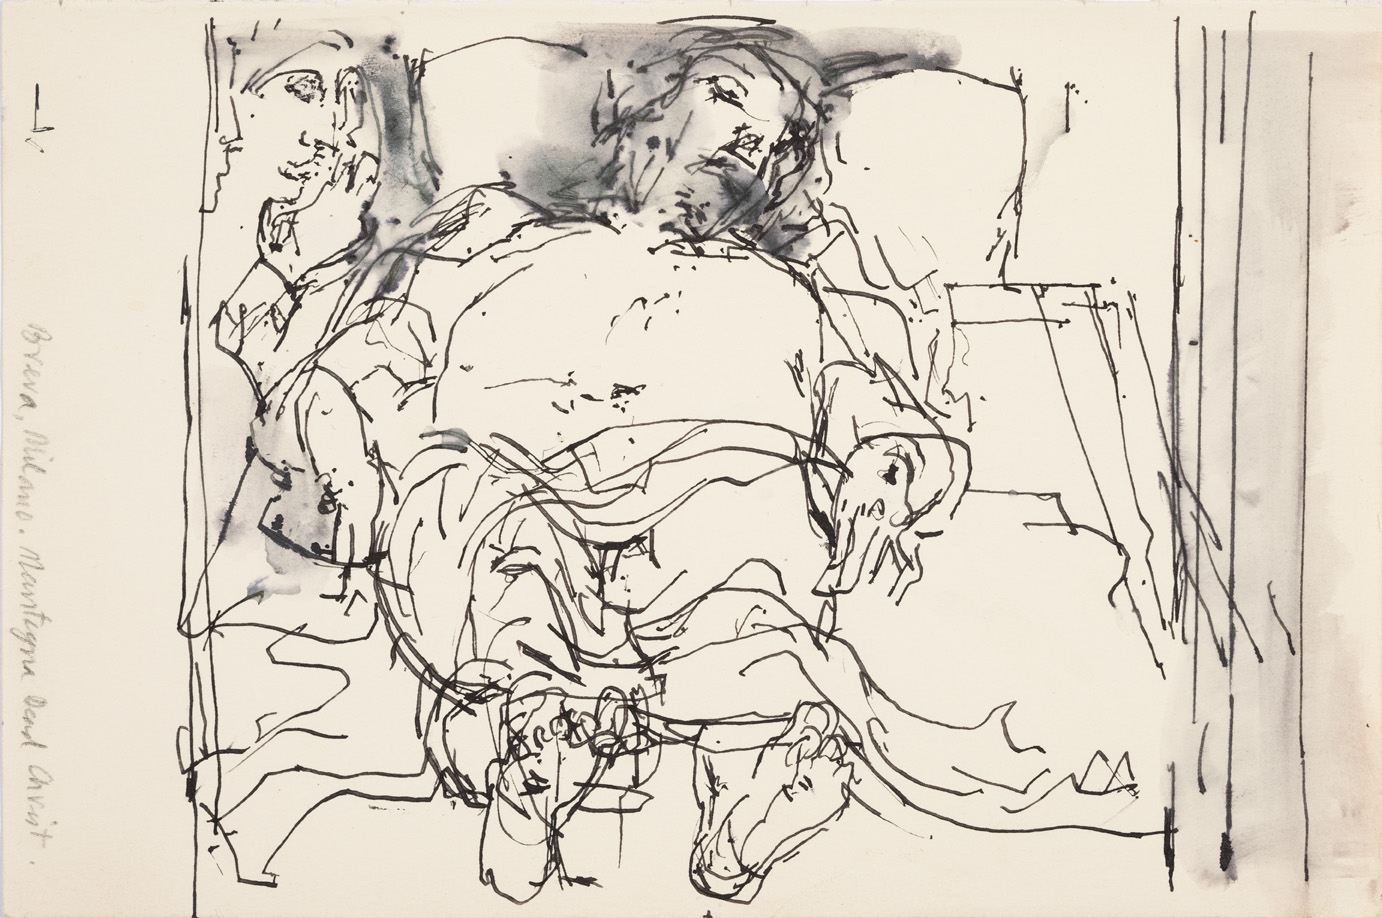 Dibujo a tinta de John Berger inspirado en "El Cristo" de Andrea Mantegna, 2000-2010 © Beverly’s Collection